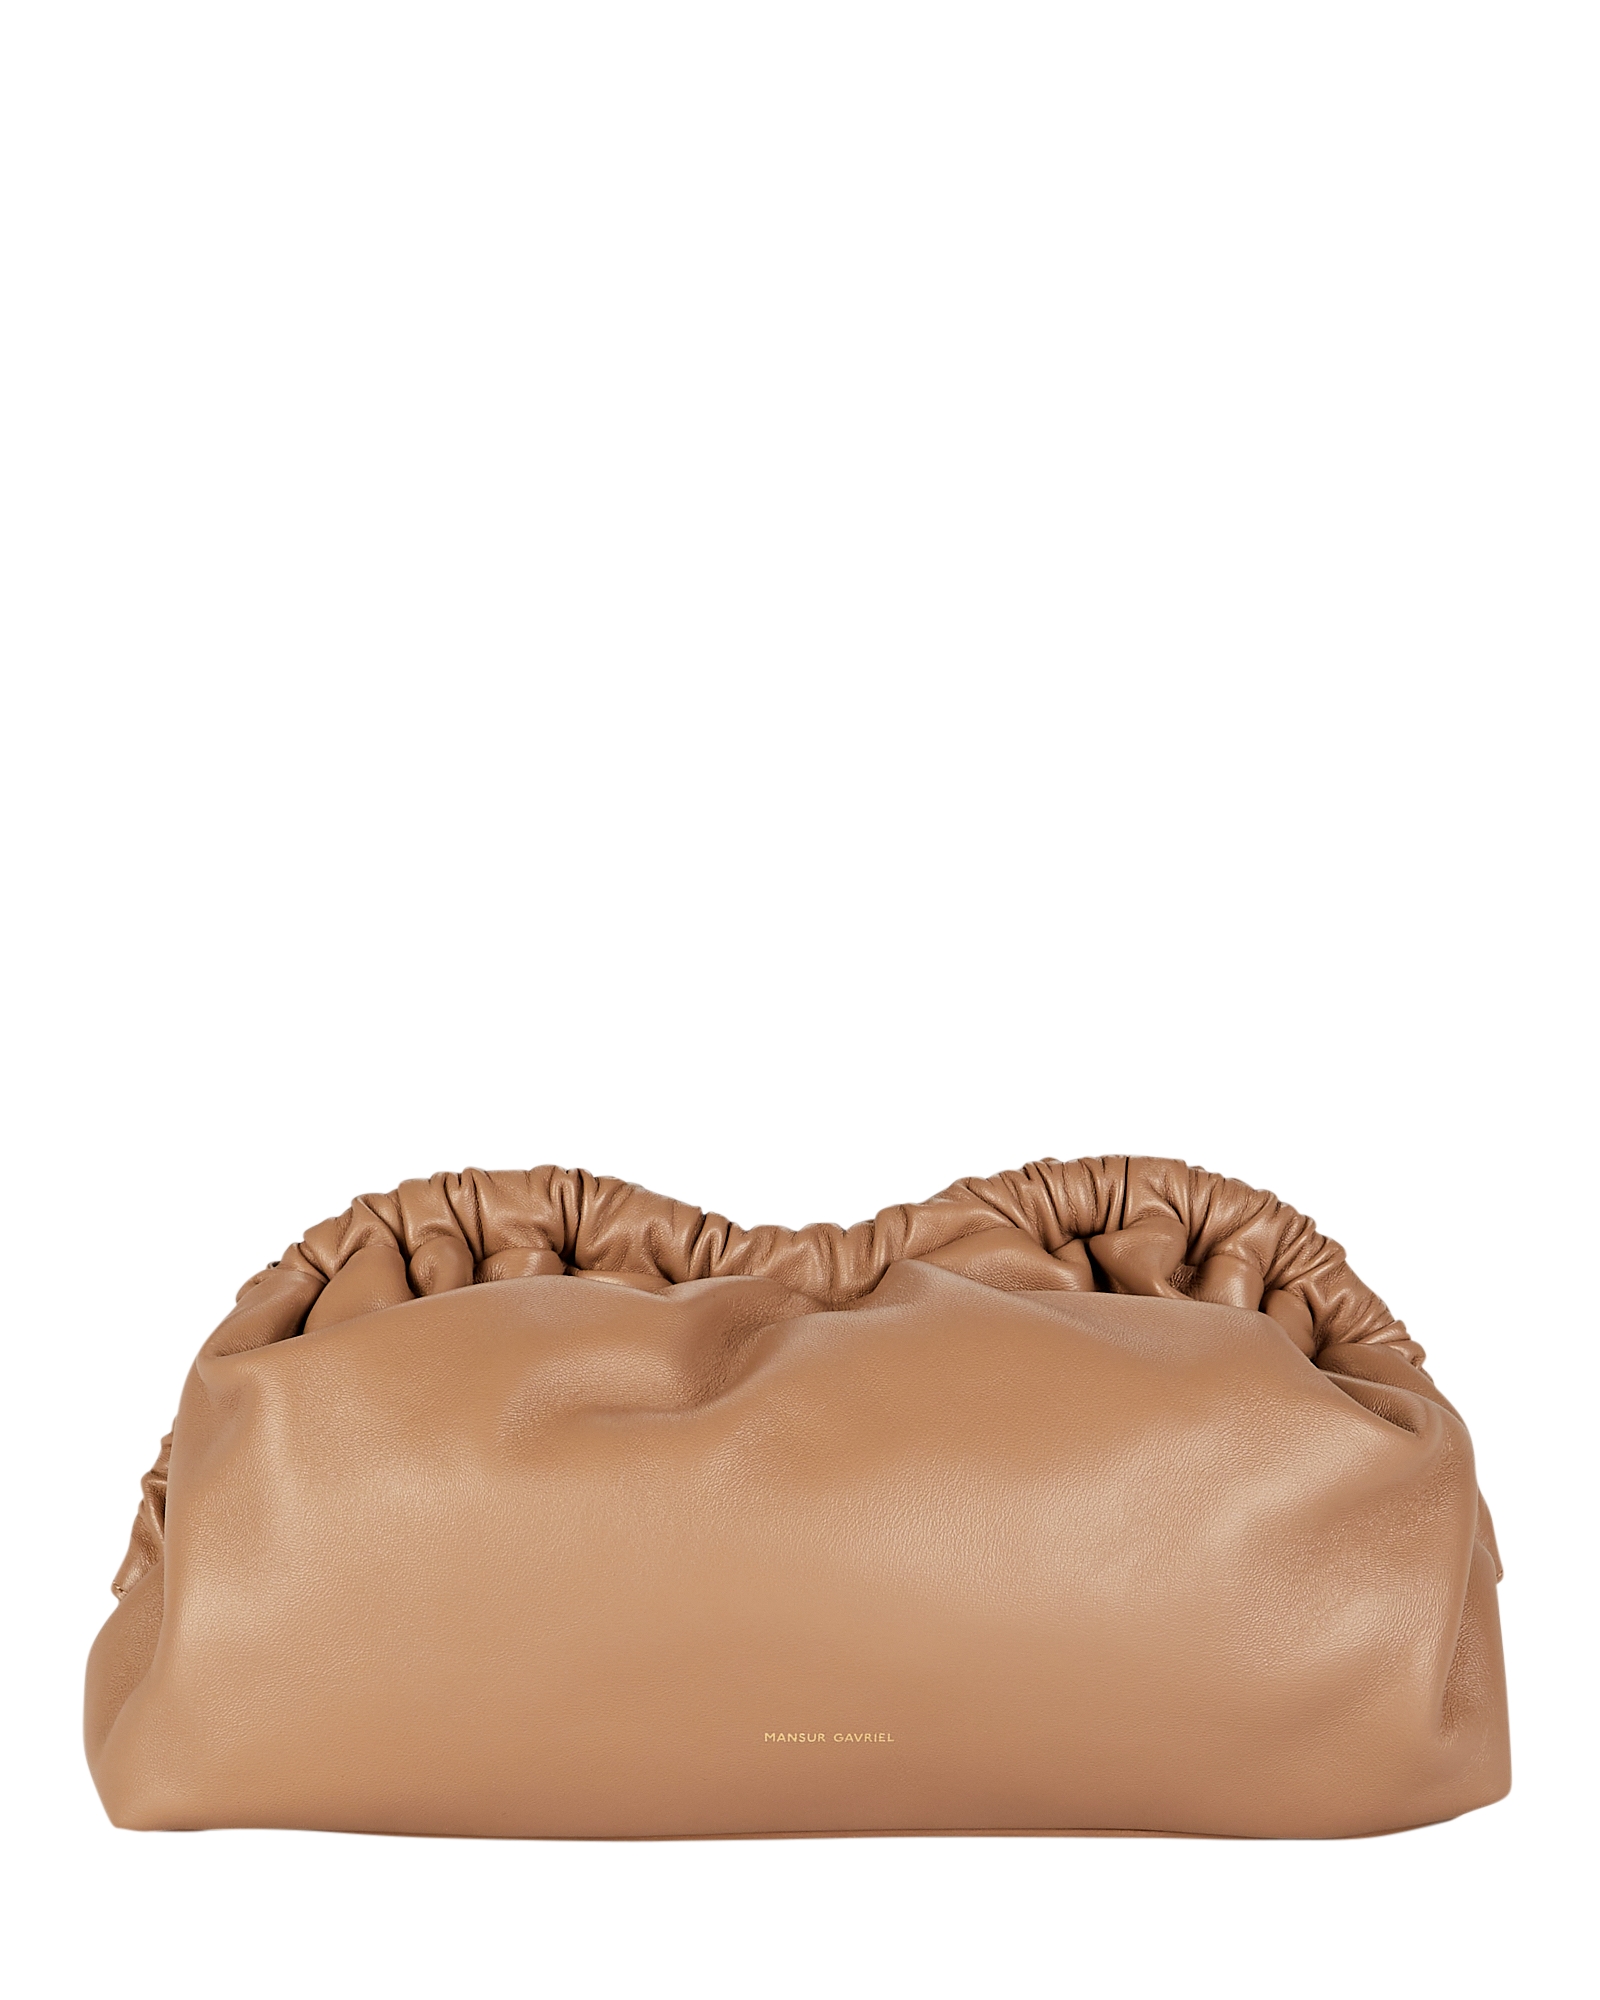 Mansur Gavriel Cloud Soft Leather Pouch | INTERMIX®